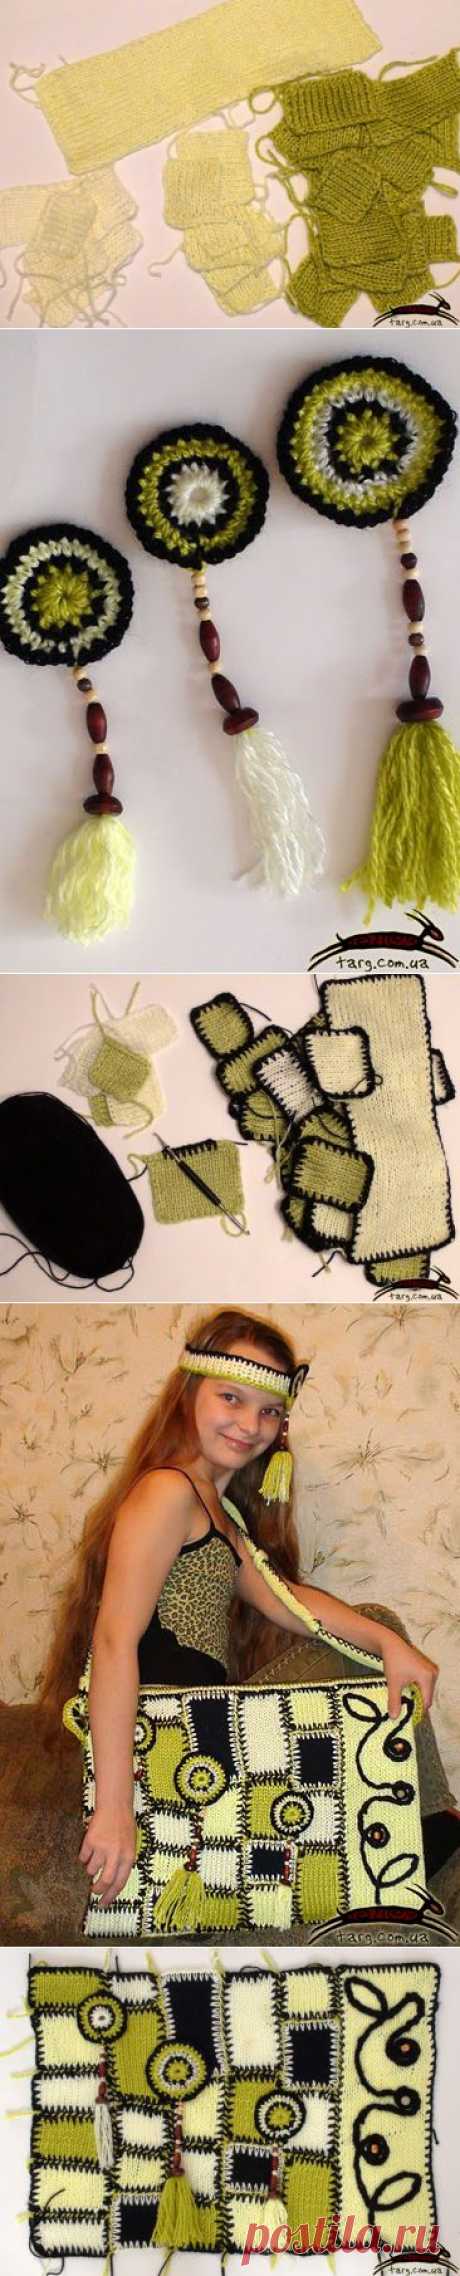 Фотоотчет - изготовление вязаной сумки в стиле пэчворк - Ярмарка Мастеров - ручная работа, handmade